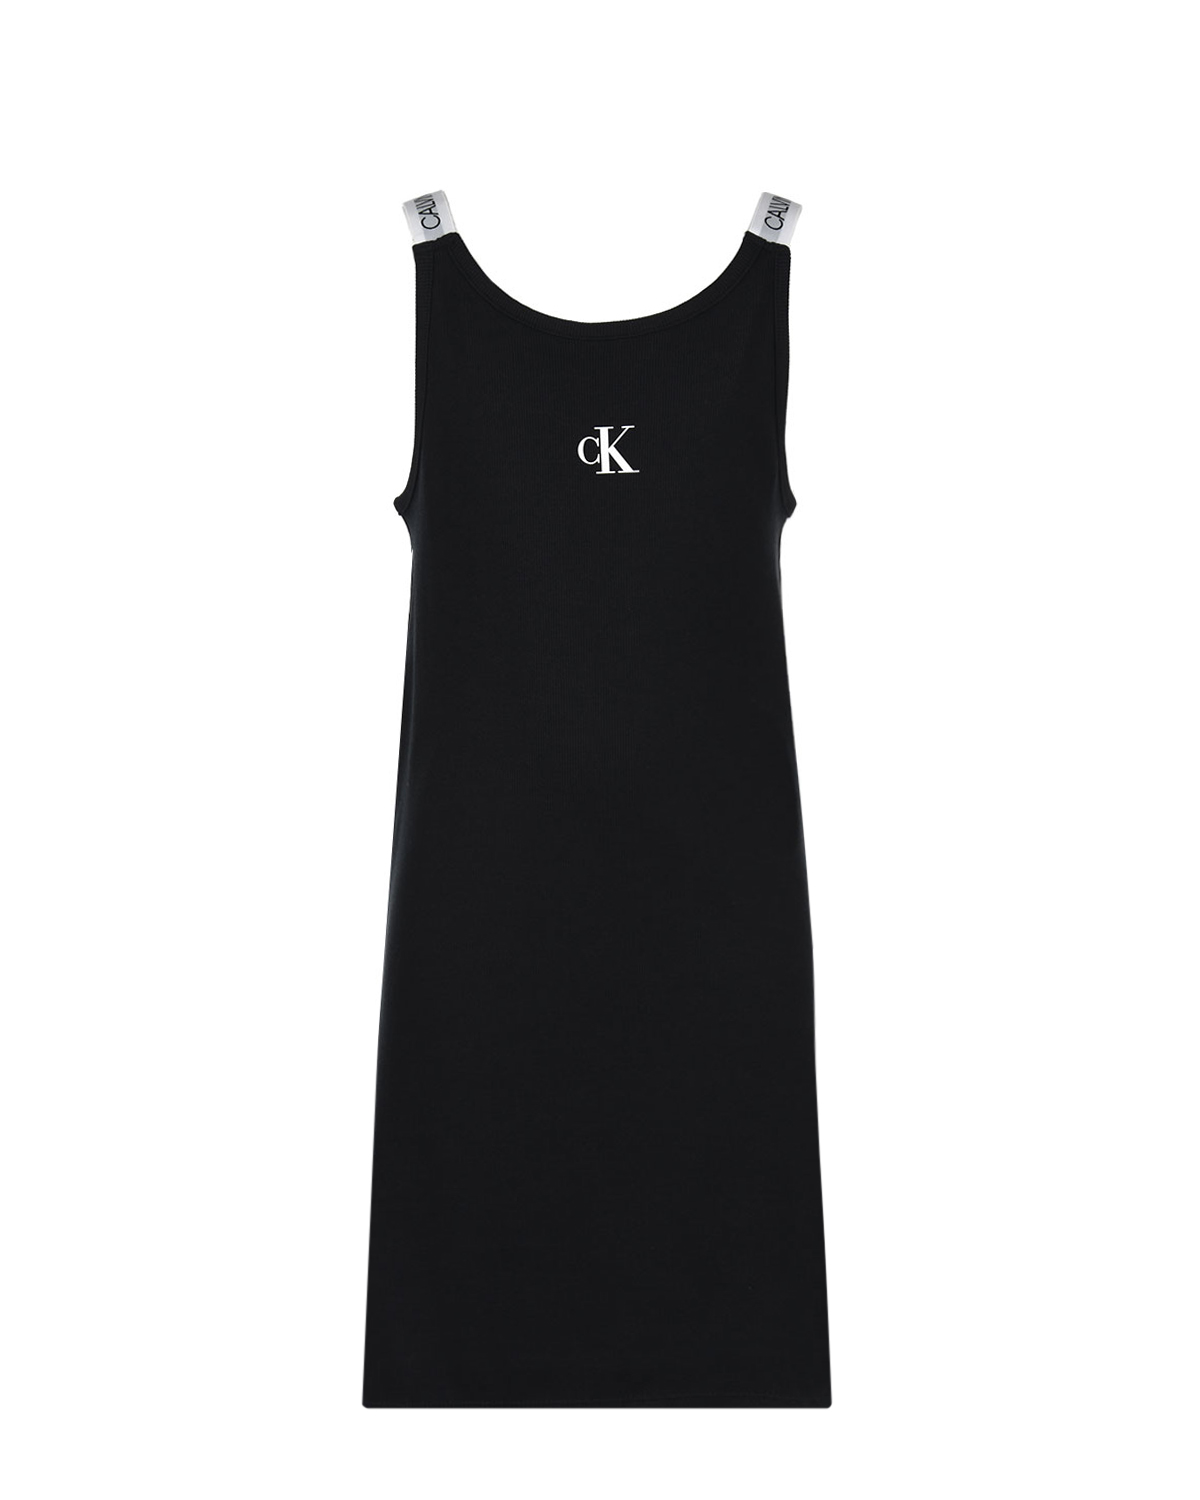 Трикотажное платье с брендированными лямками Calvin Klein детское, размер 140, цвет черный - фото 1